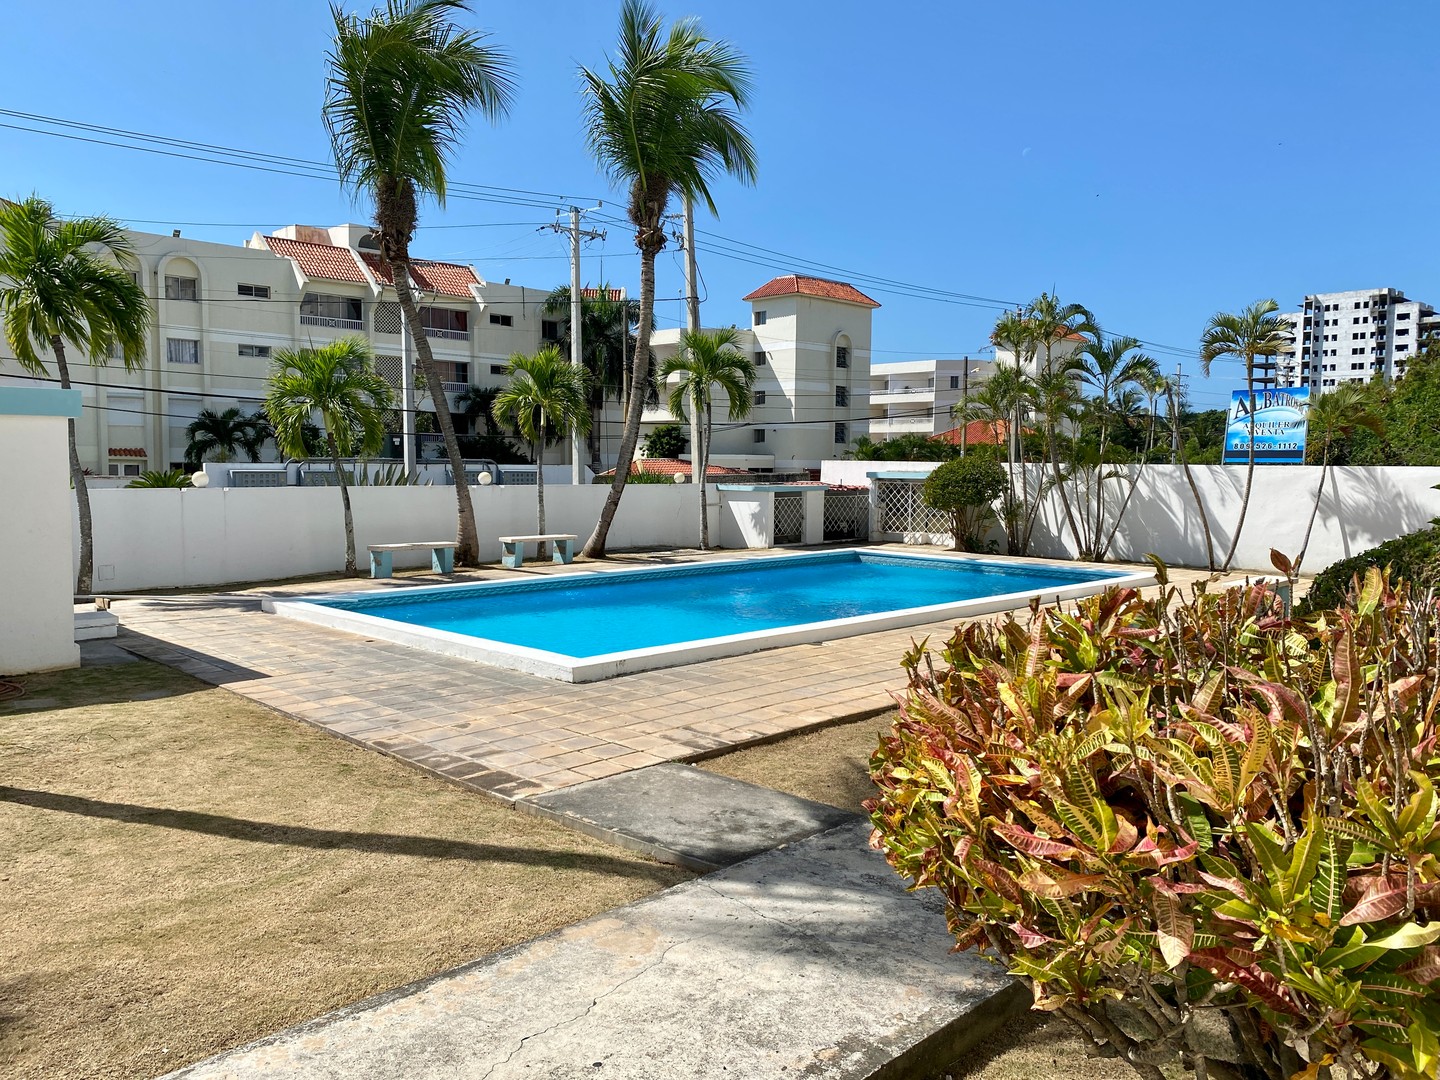 apartamentos - Juan Dolio - Condominio con piscina - Apartamento amueblado en alquiler - 2 hab.